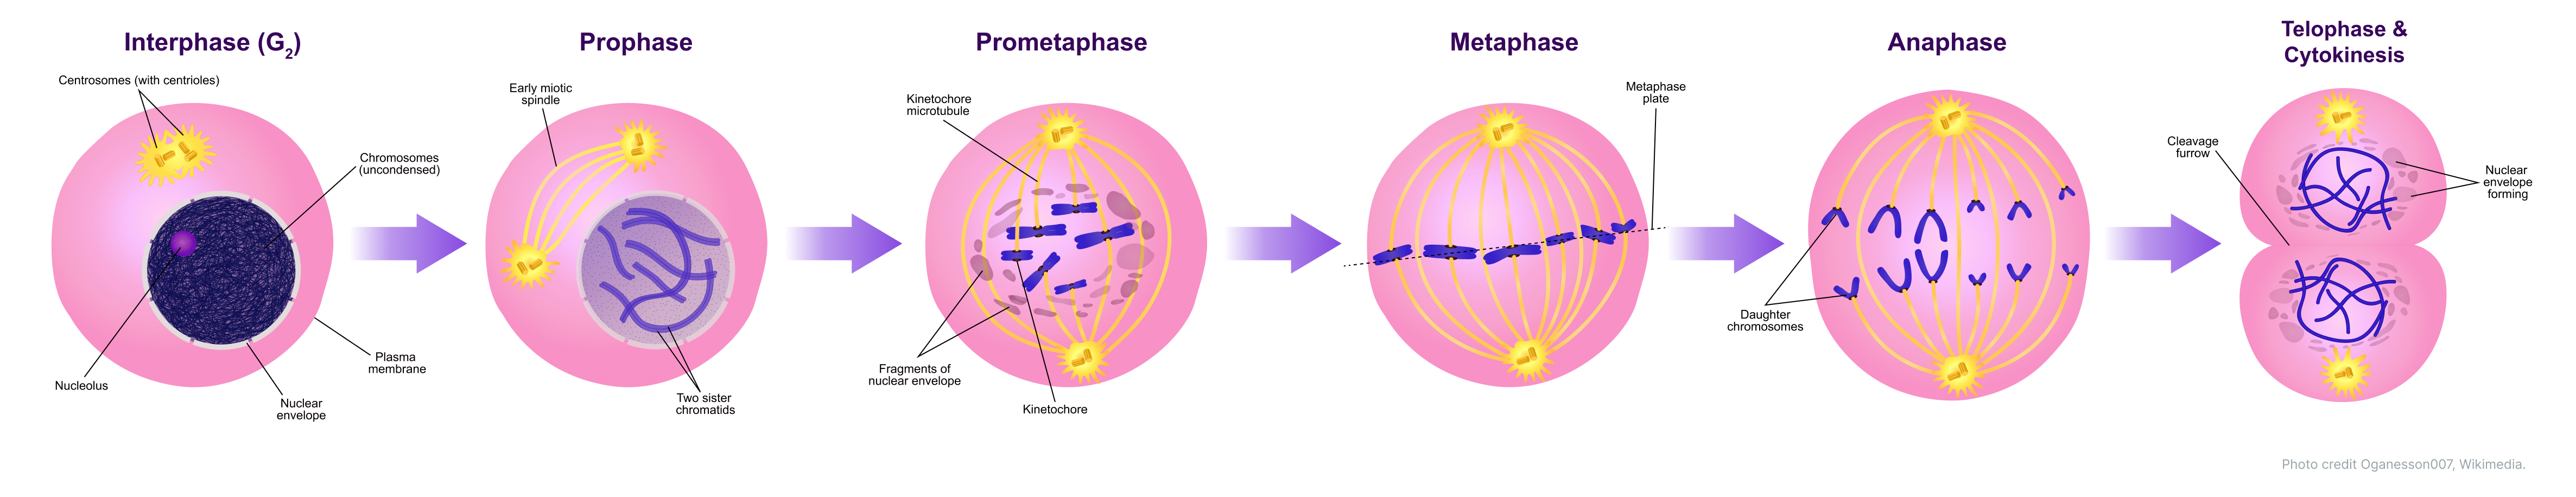 Кариокинез определяется как деление ядра во время М-фазы клеточного цикла до начала деления цитоплазмы Цитокинез, с другой стороны, определяется как деление цитоплазмы во время М-фазы клеточного цикла